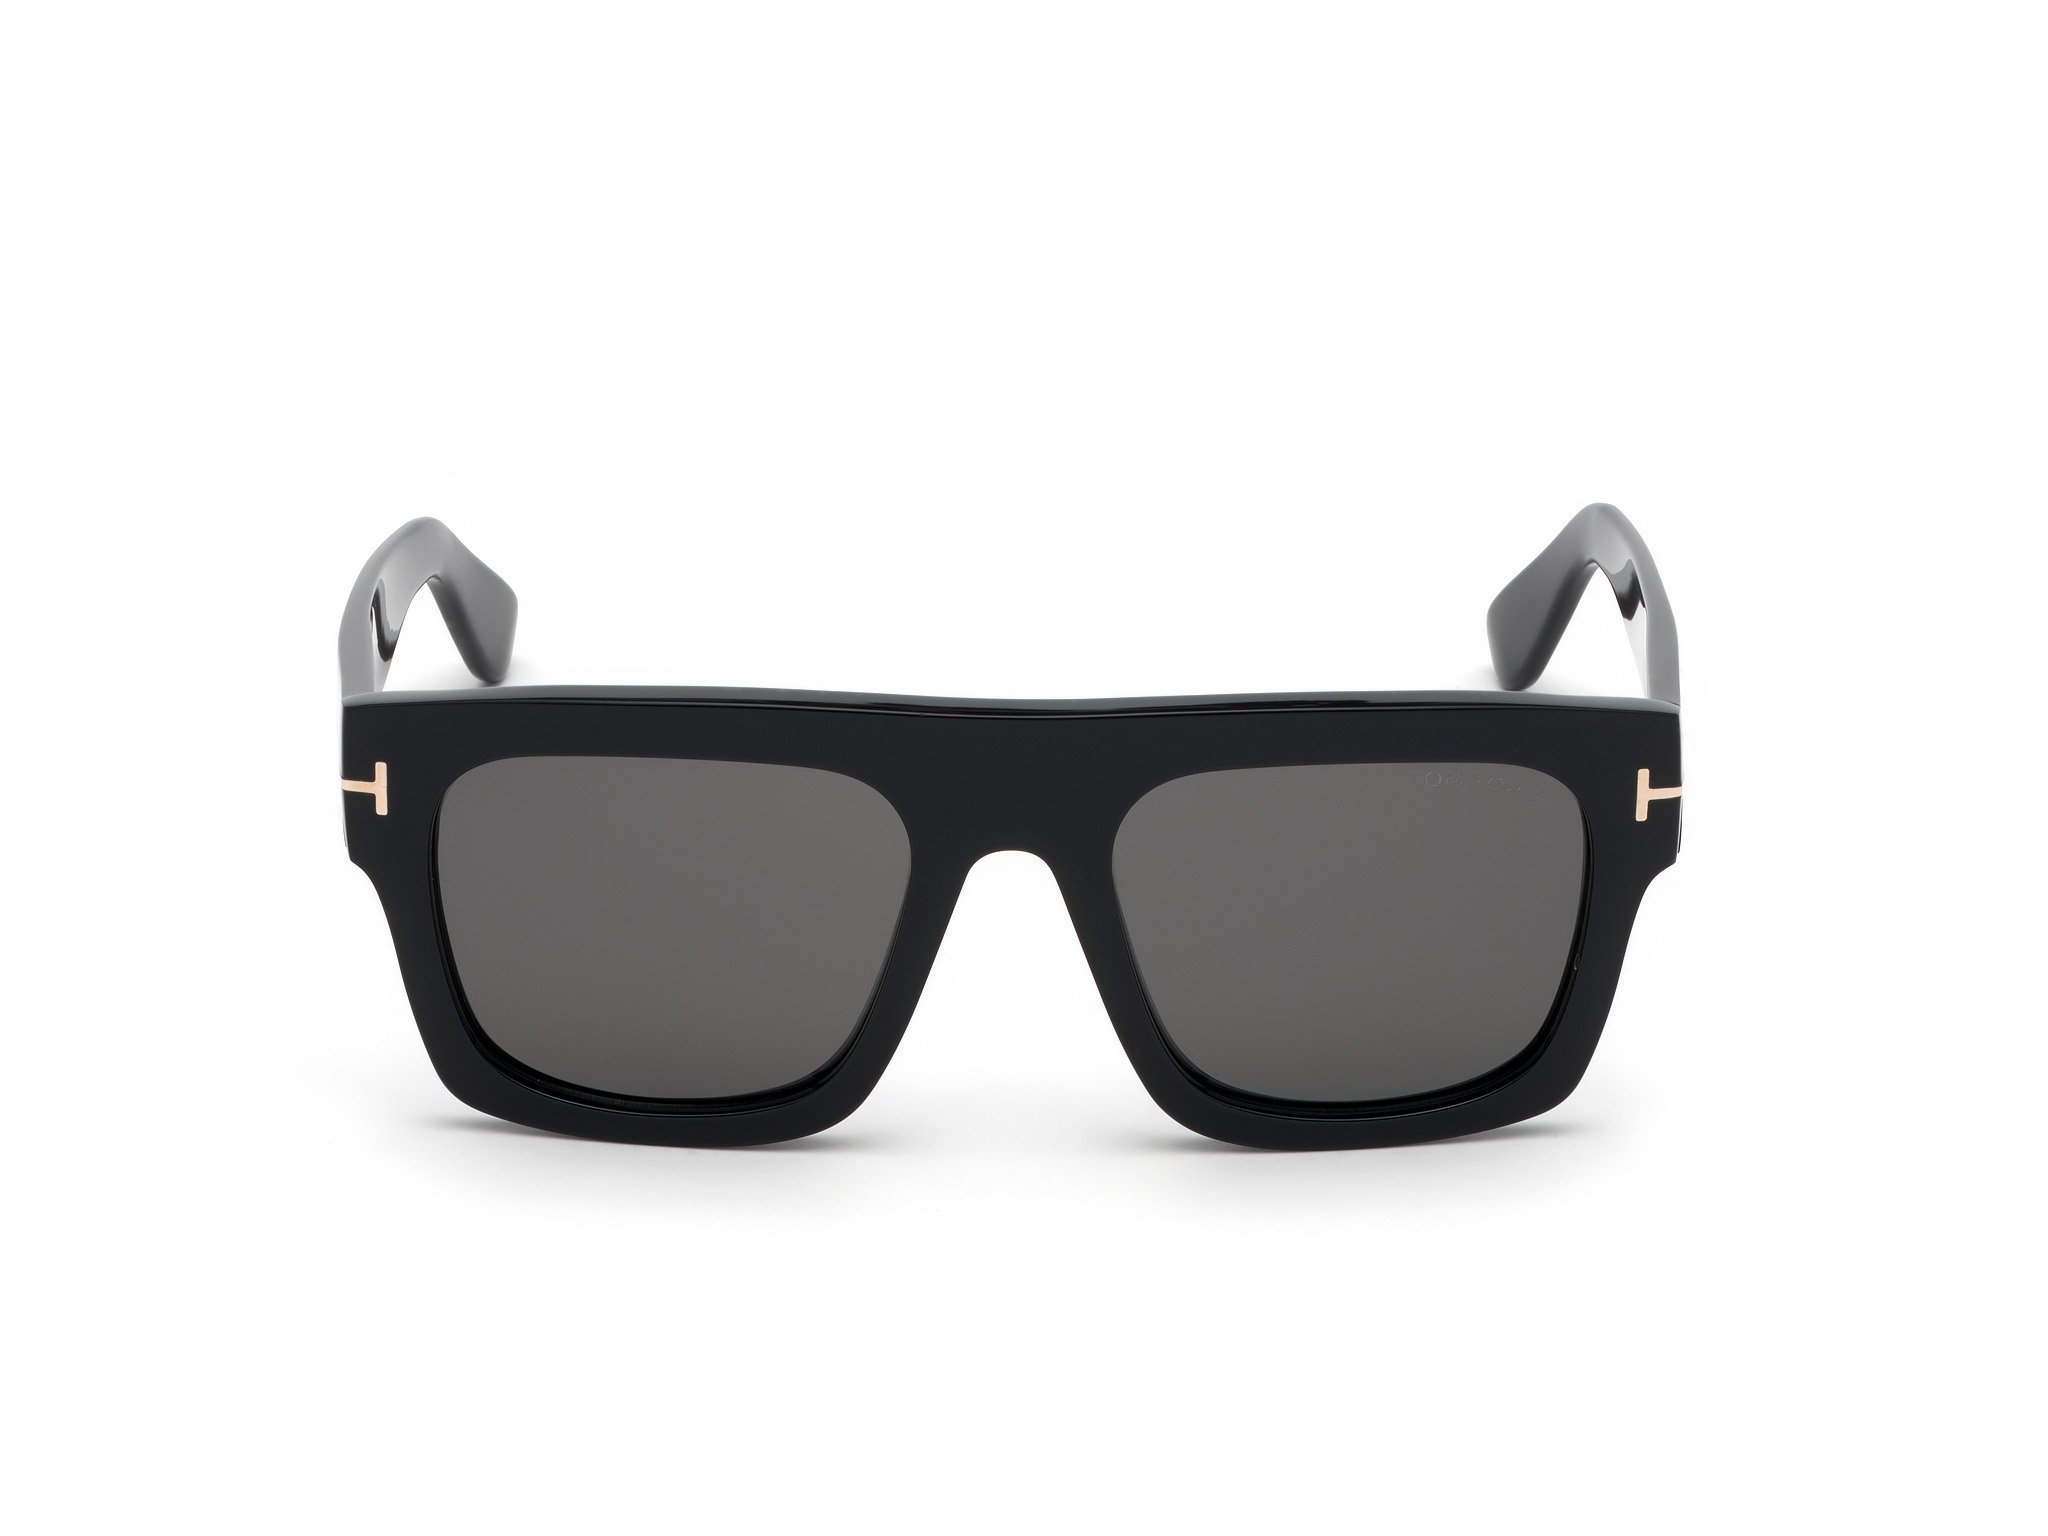 Das Bild zeigt die Sonnenbrille FT0711 der Marke Tom Ford in schwarz von vorne.